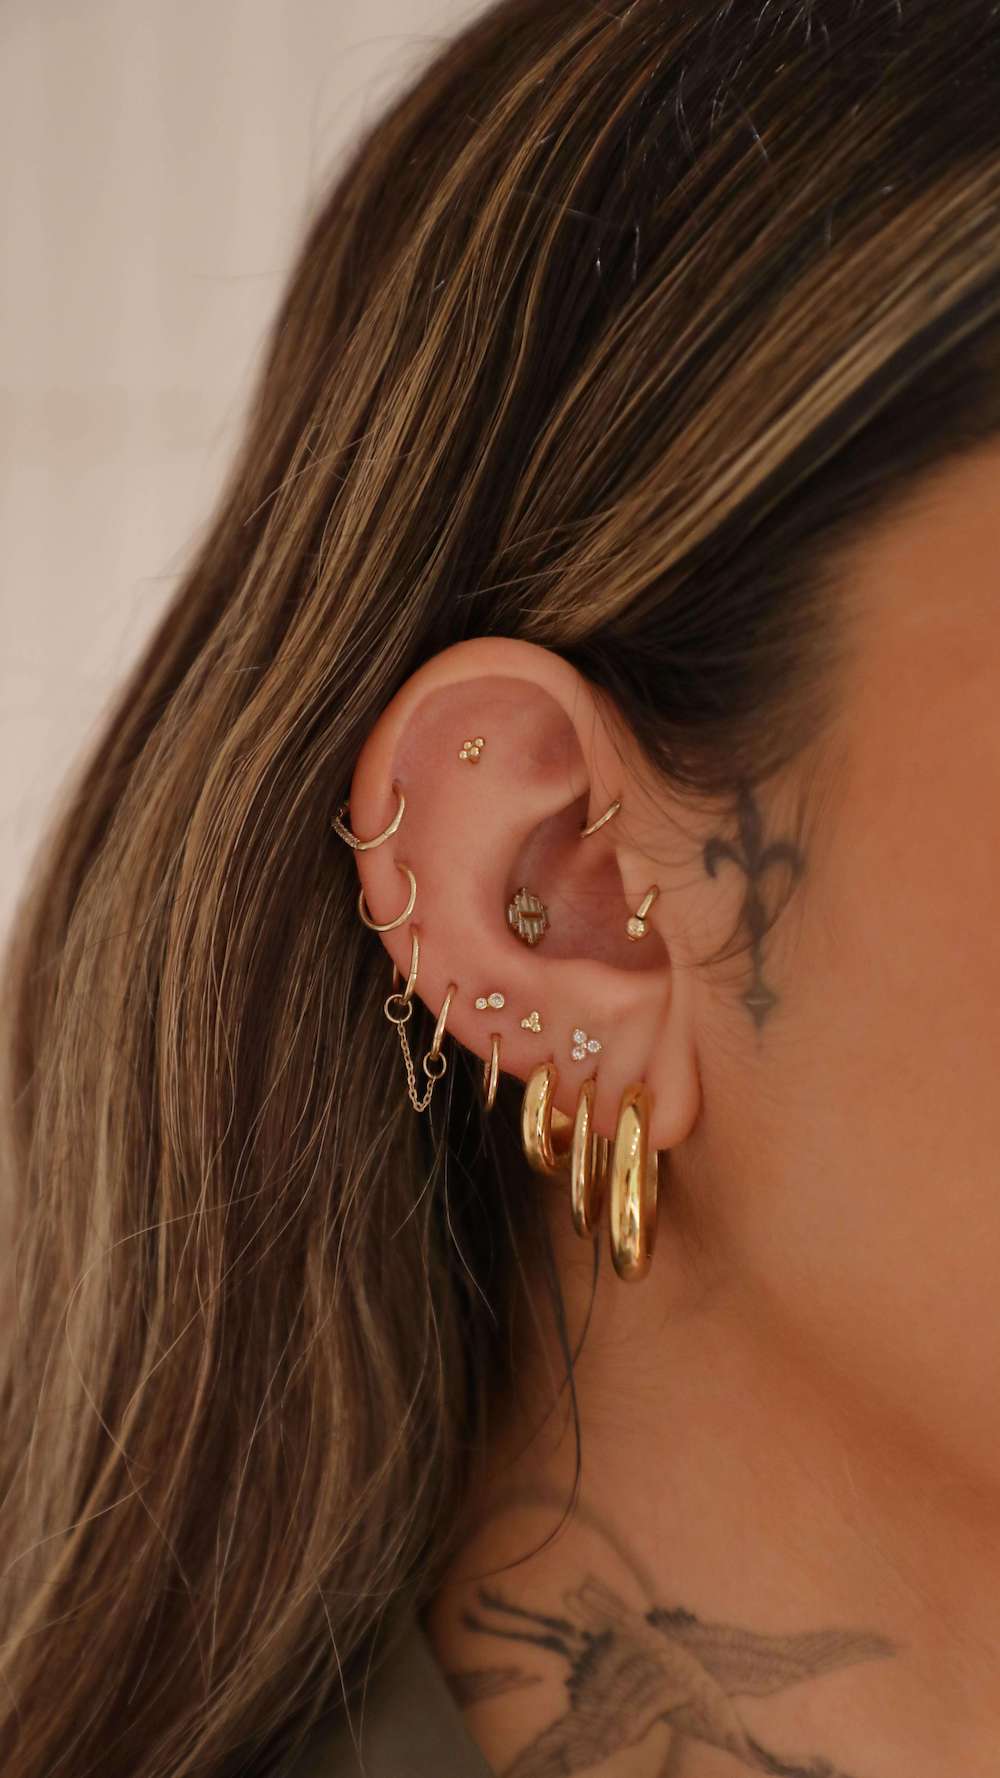 woman with ear piercings